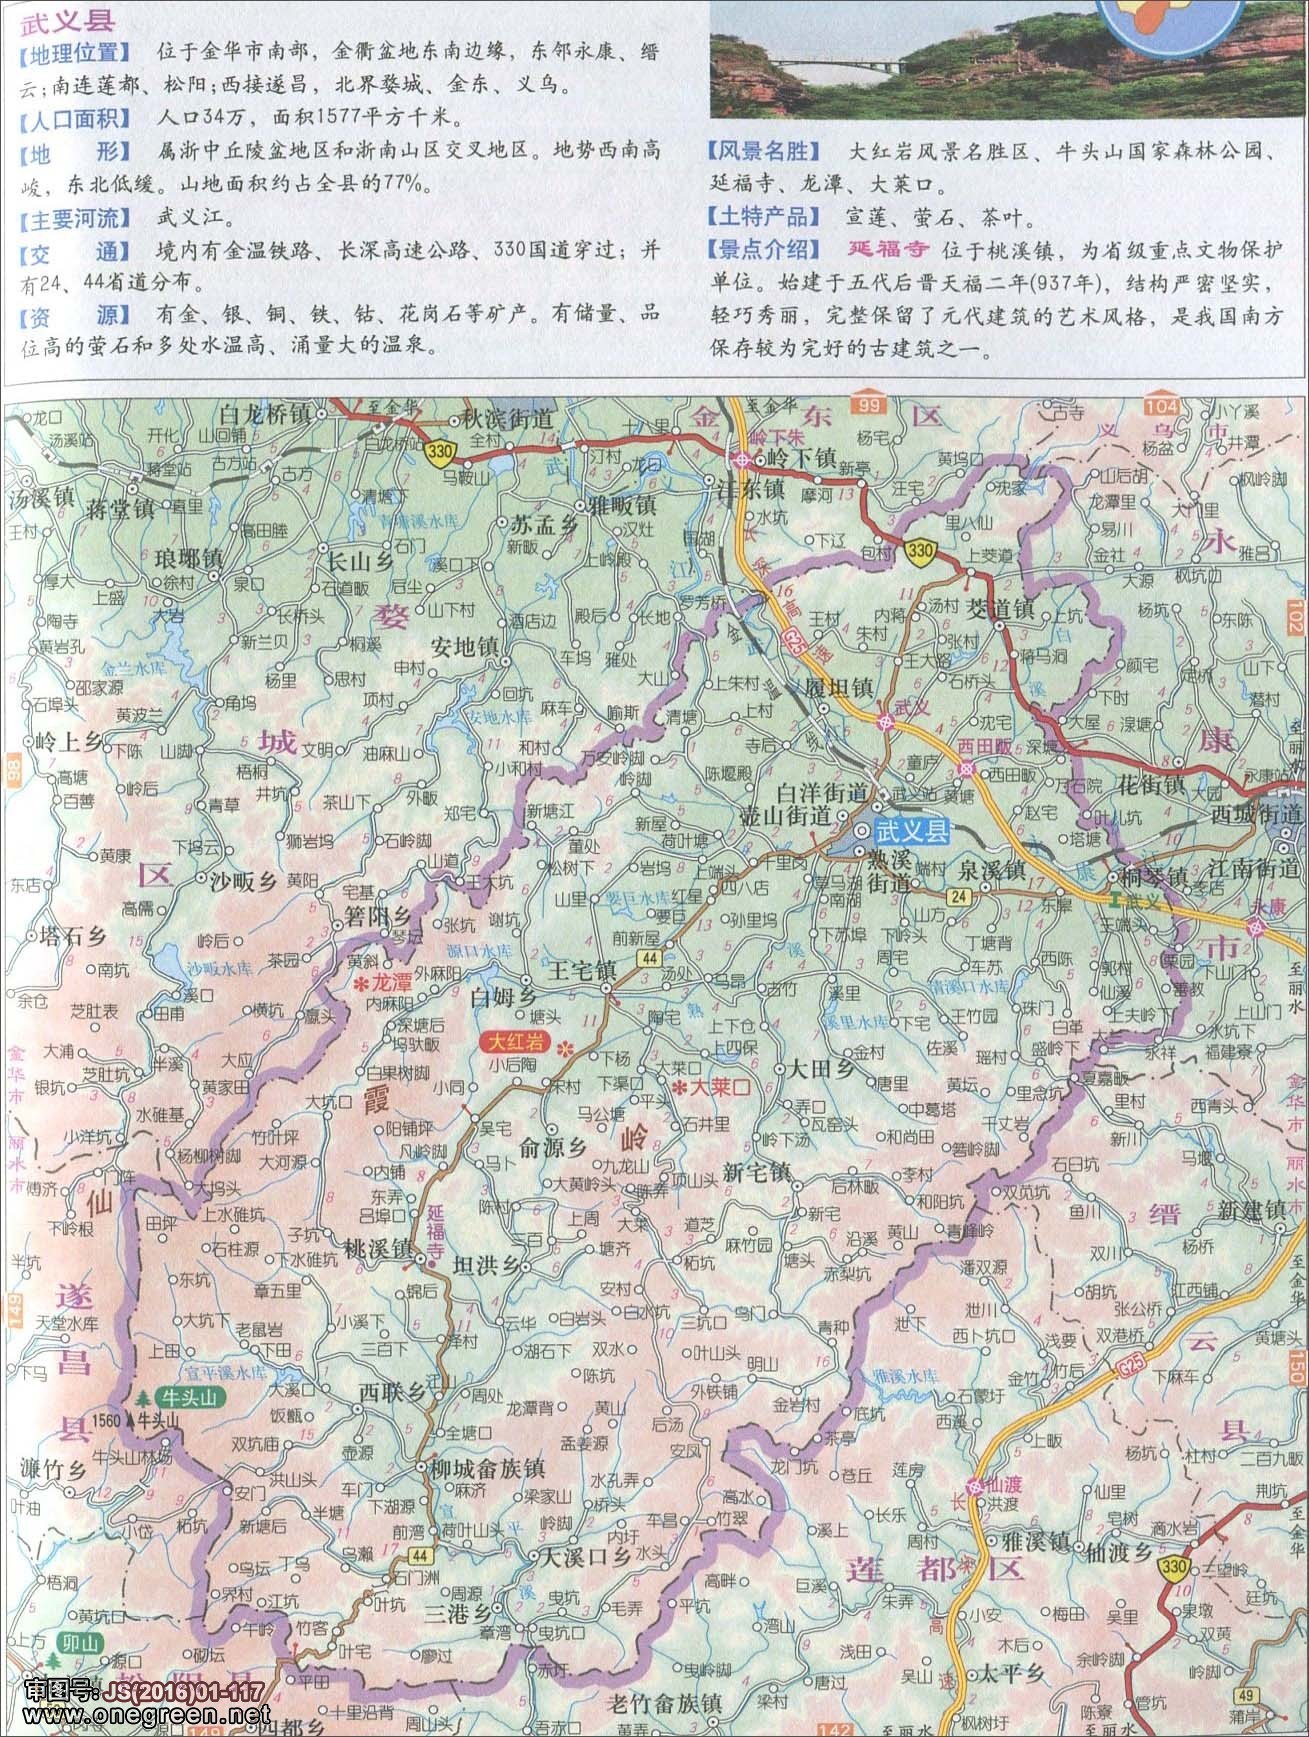 绍兴  湖州  温州  嘉兴  金华  衢州  台州 上一张地图: 浦江县地图图片